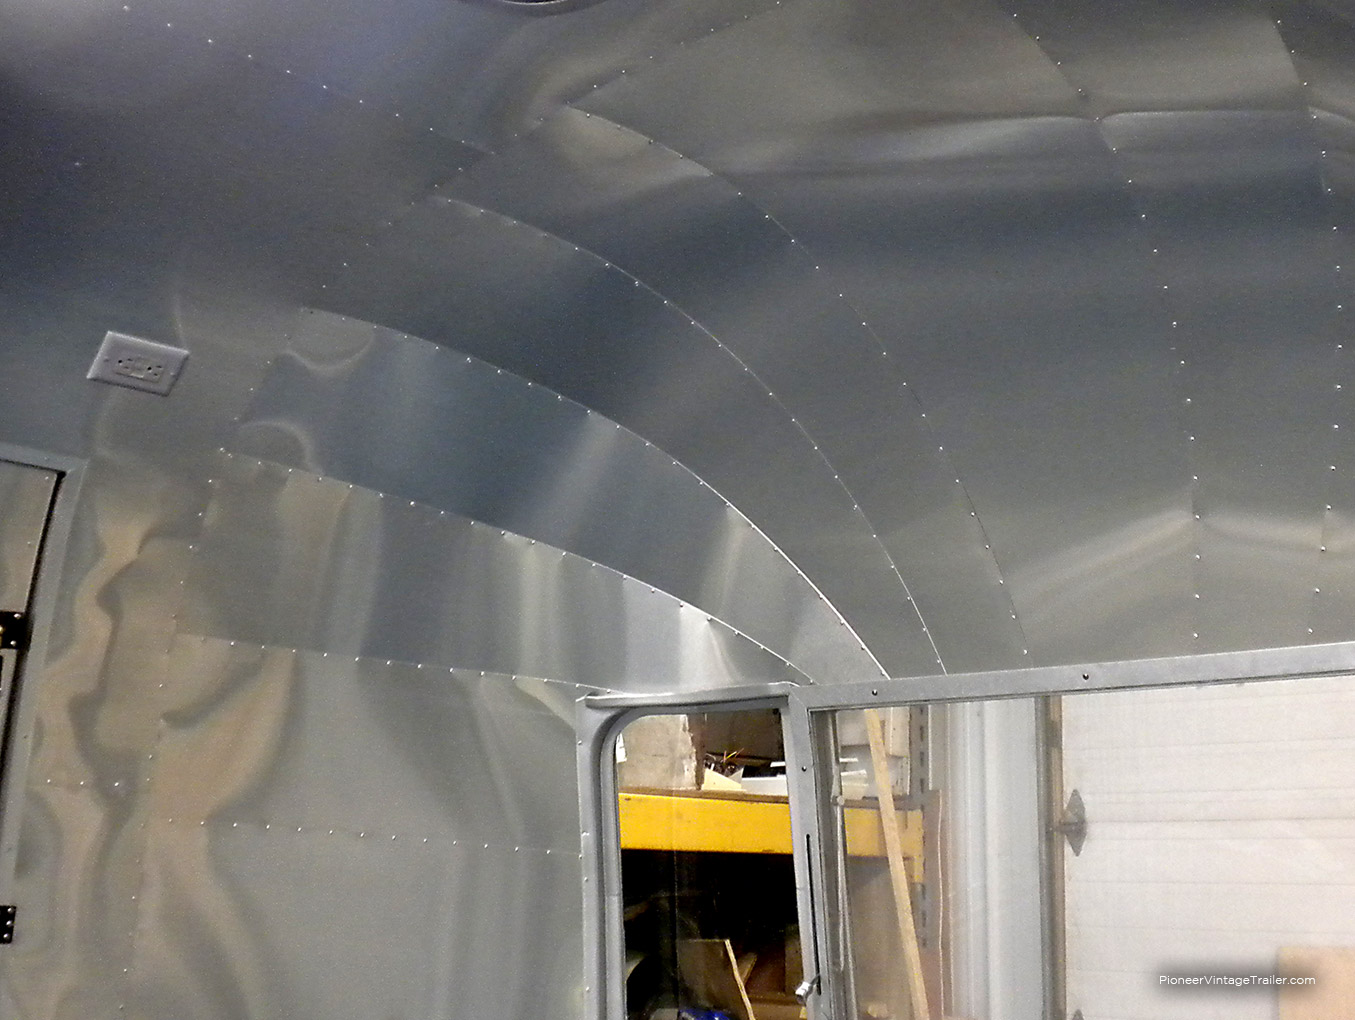 Airstream Safari w/interior all aluminum wrap